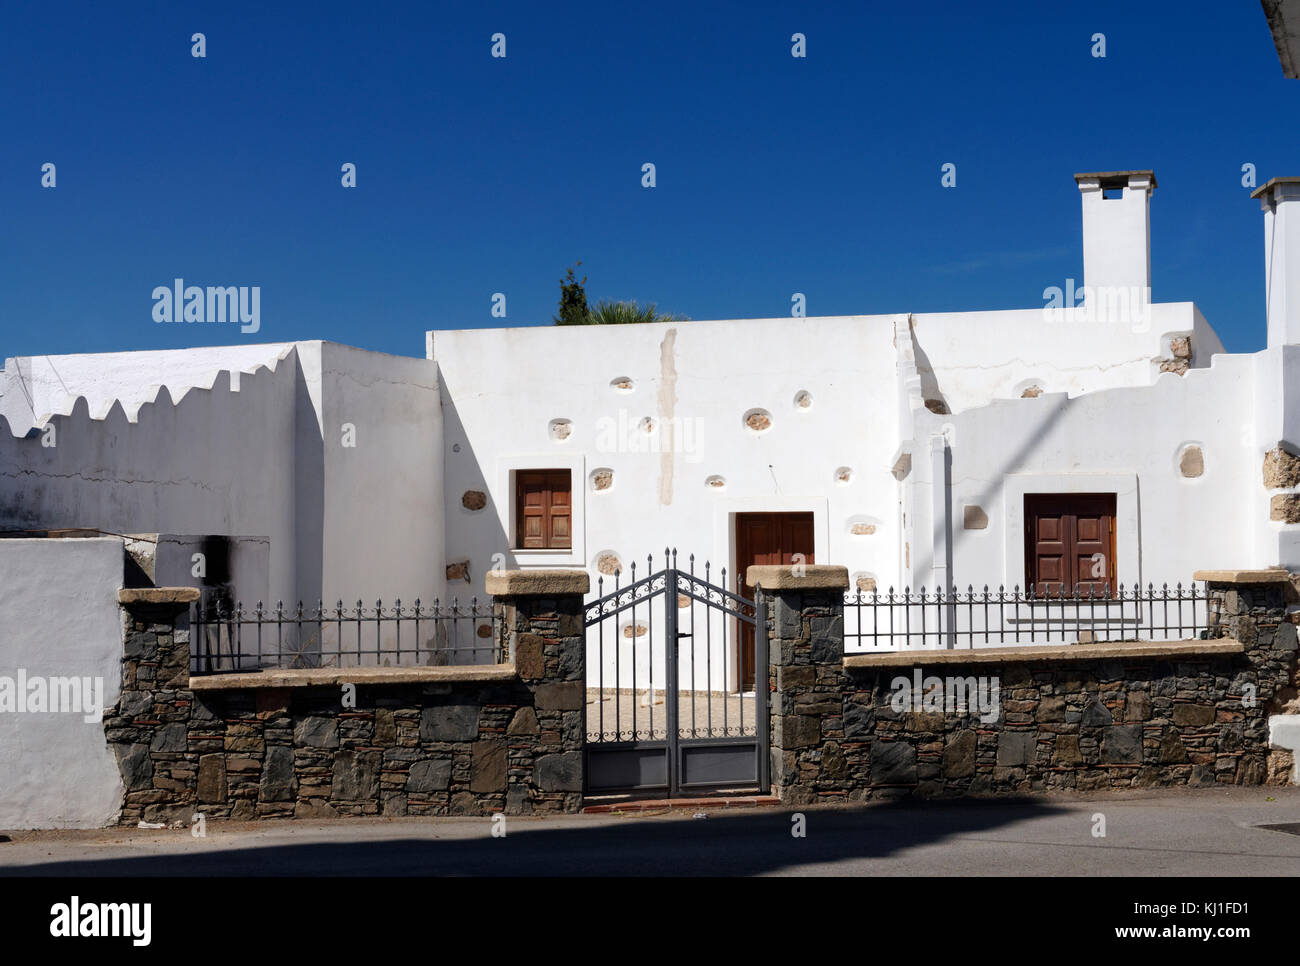 Maisons cubistes traditionnel blanc caractérisent les ruelles du village d'Archangelos, Rhodes, Dodécanèse, Grèce. Banque D'Images